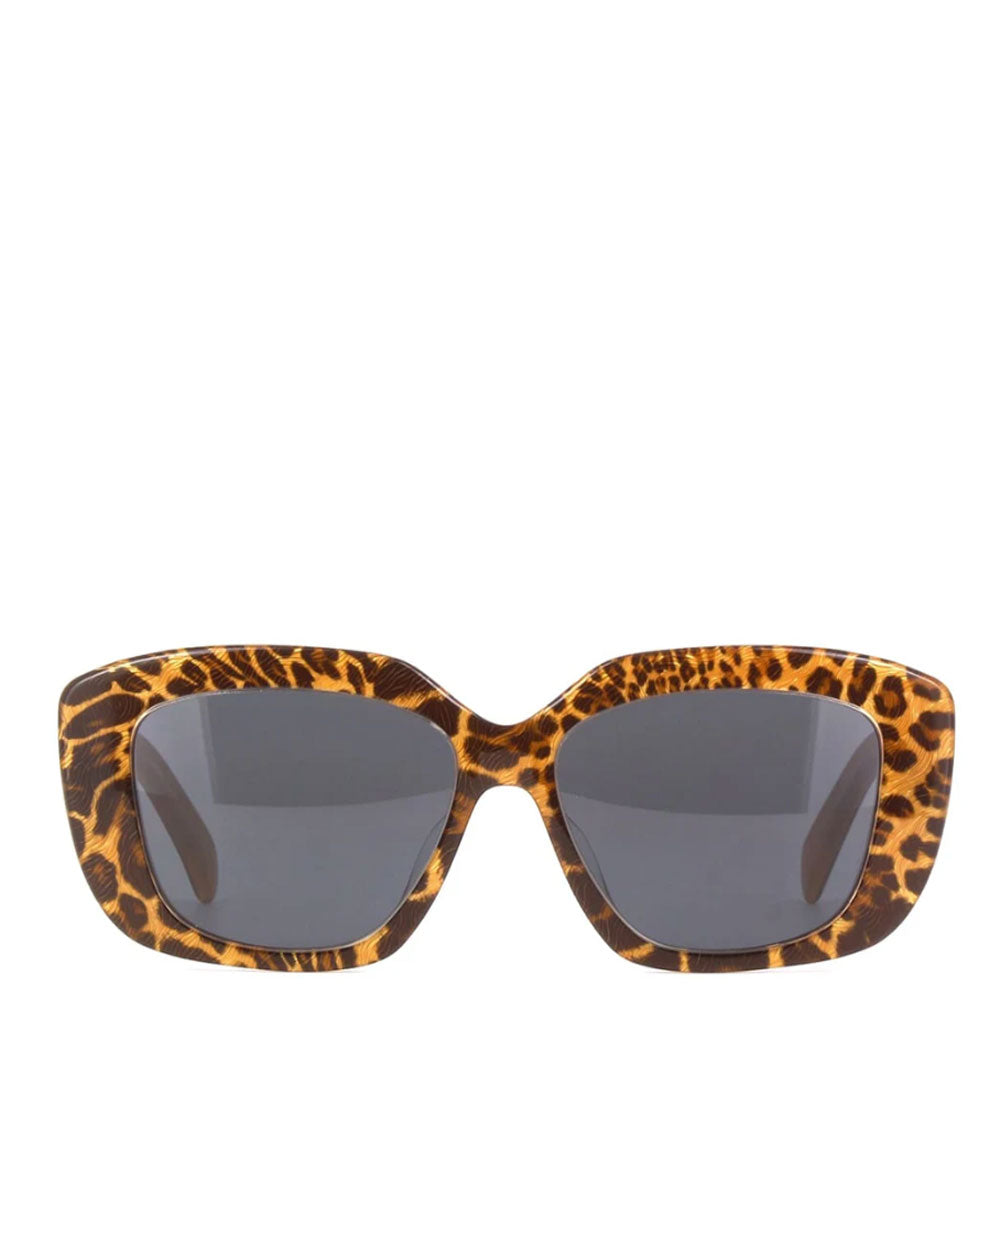 Triomphe Sunglasses in Leopard